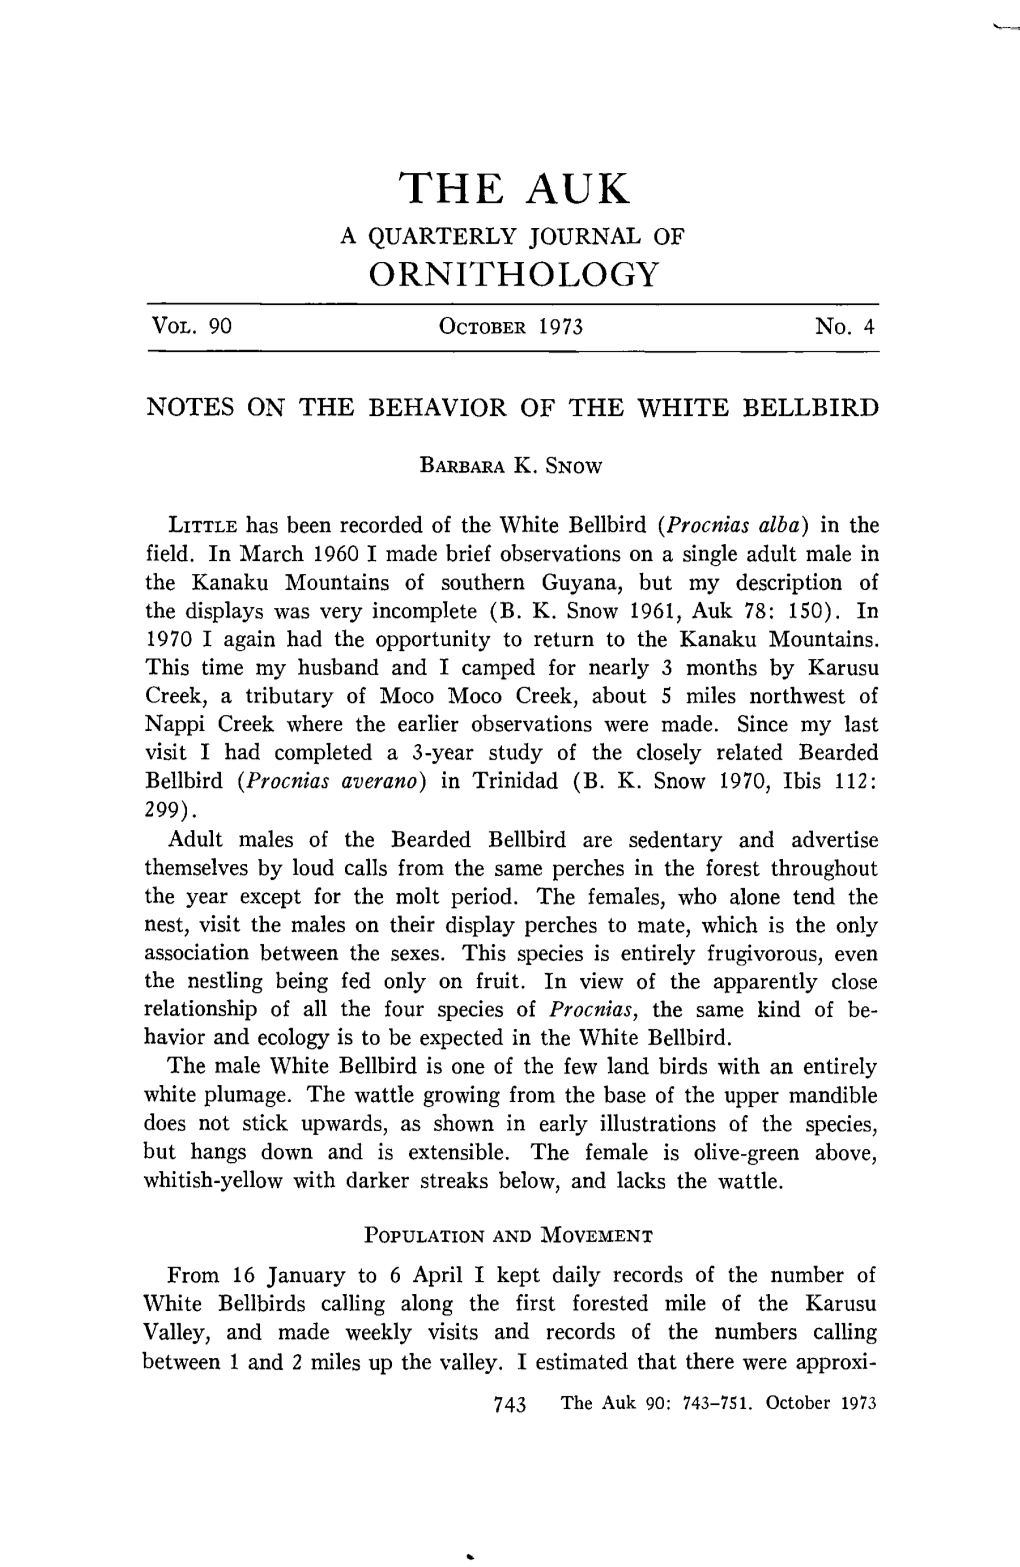 Notes on the Behavior of the White Bellbird